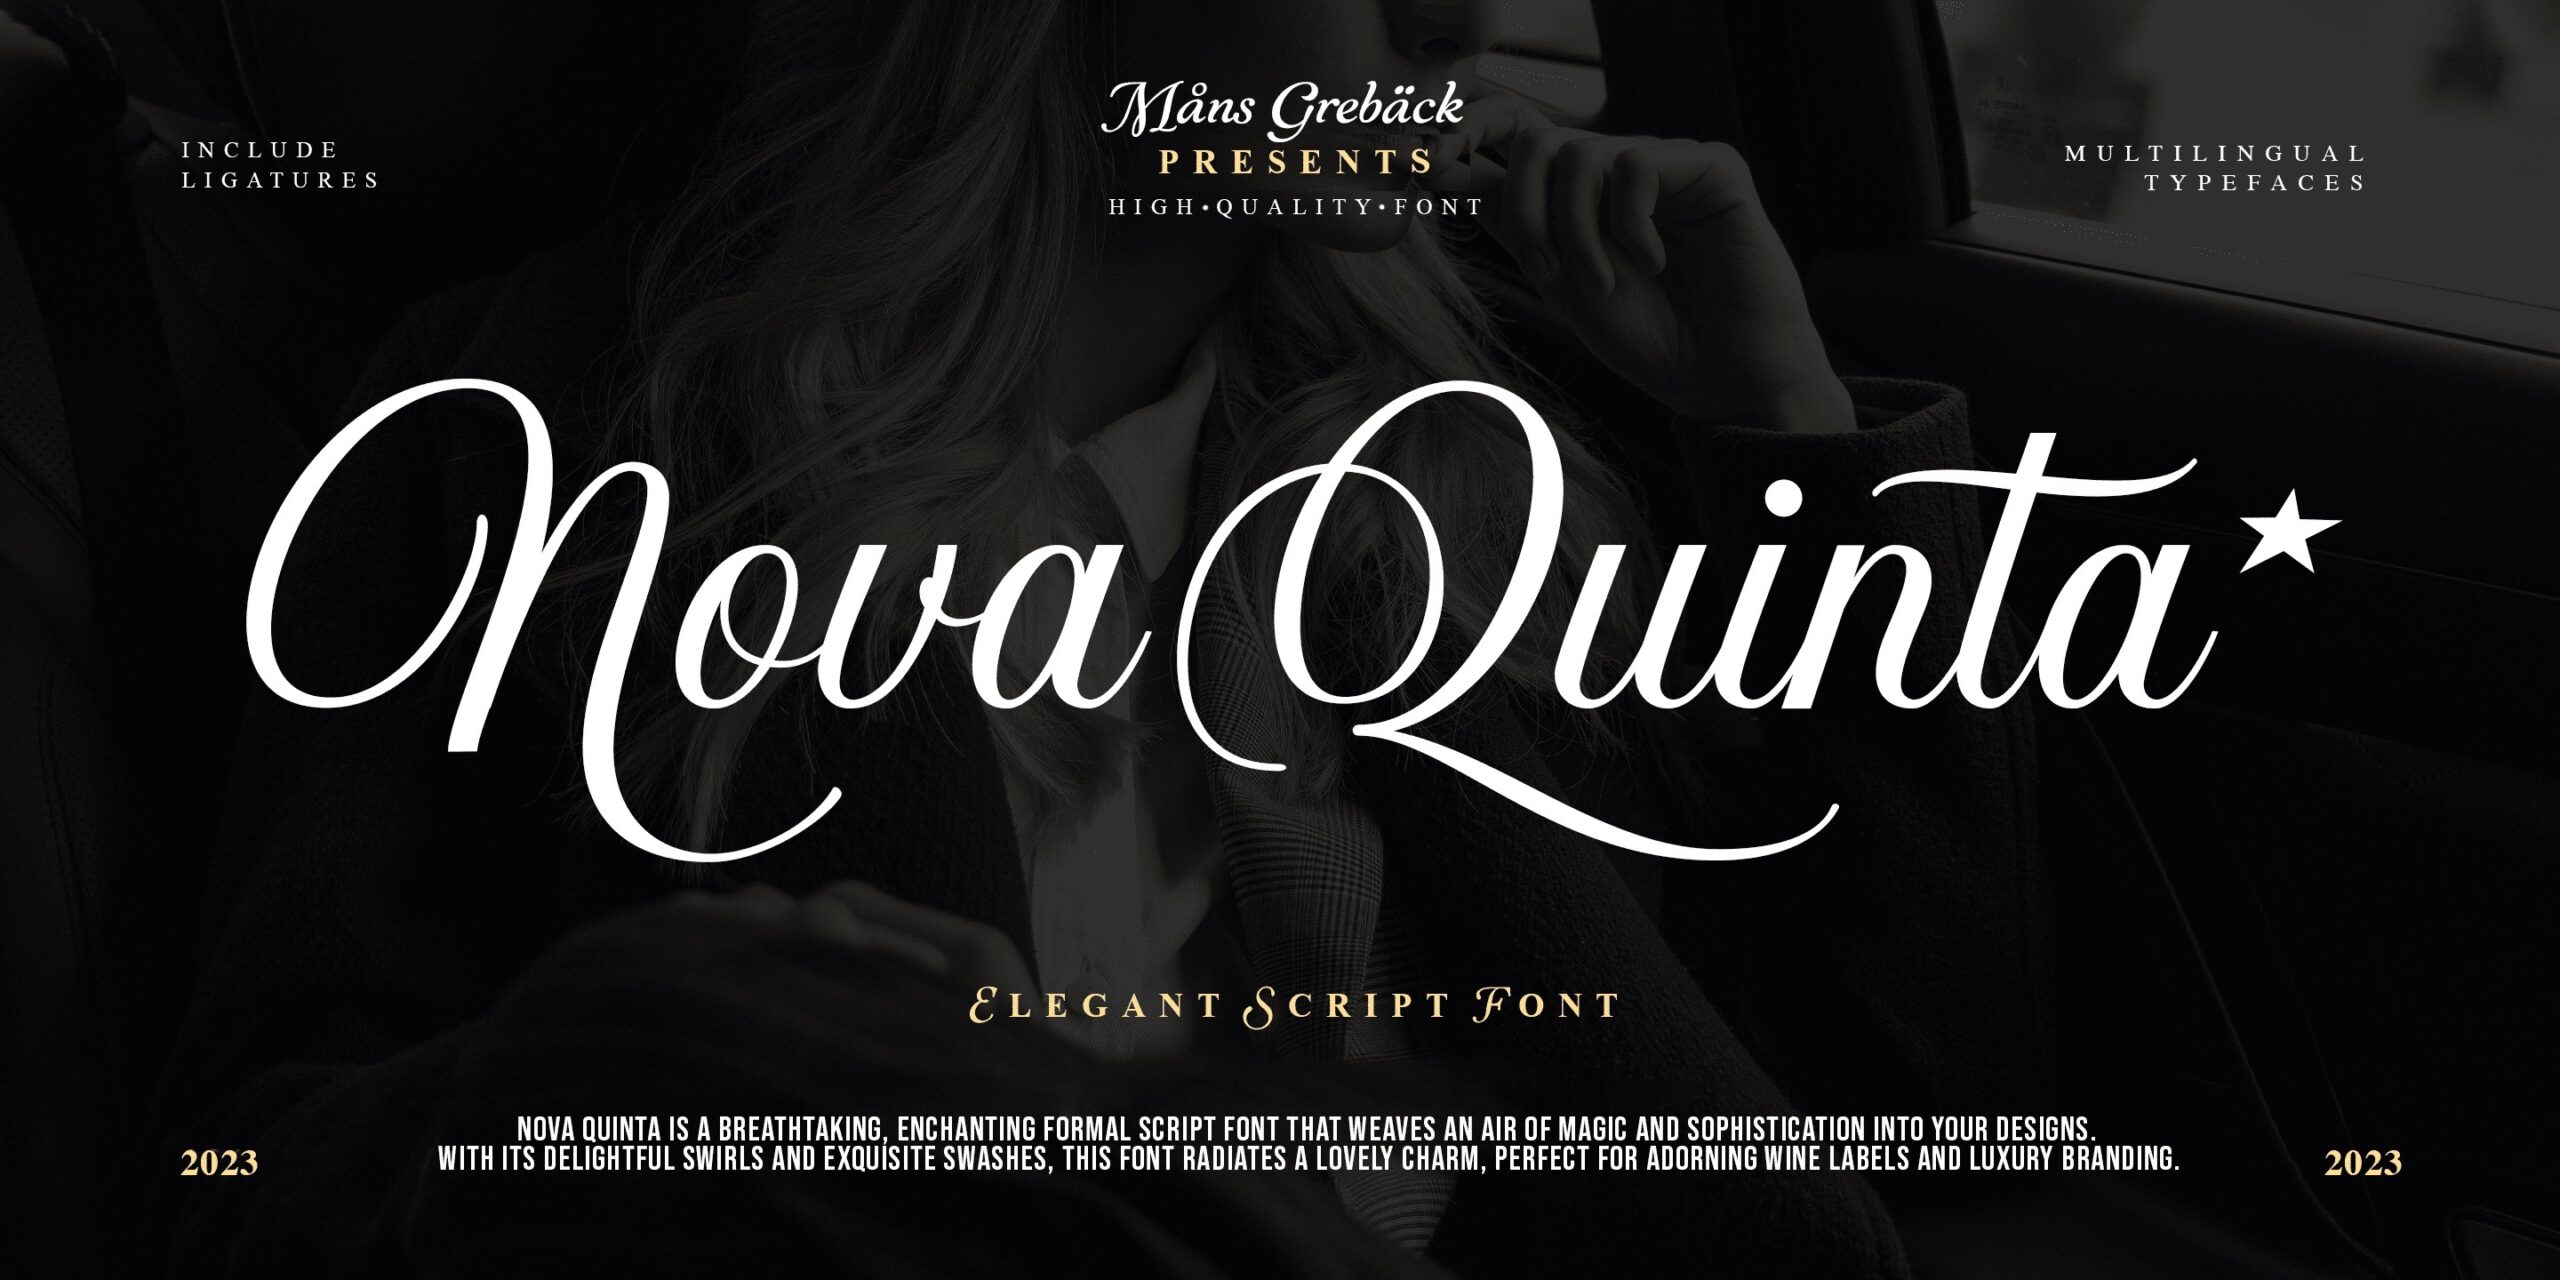 Preview and download Nova Quinta font